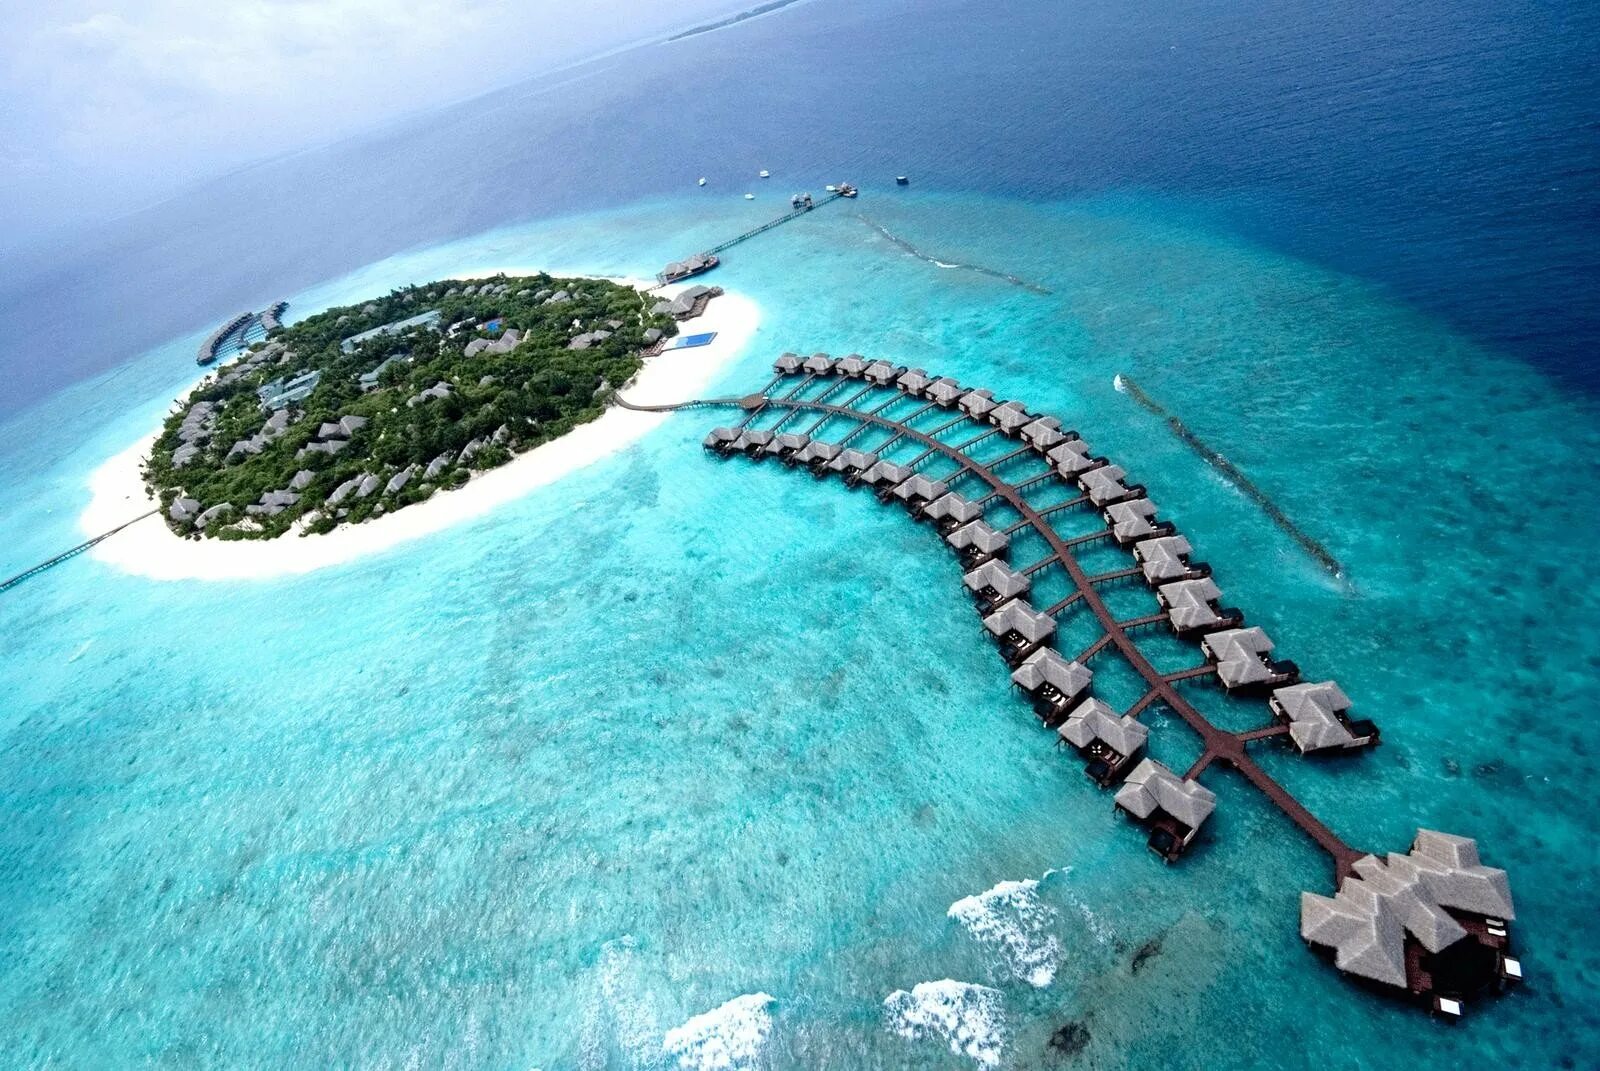 Хаа Алифу Атолл Мальдивы. Мальдивы Гаафу-Дхаалу. Остров Ган Мальдивы. Аэропорт gan Мальдивы.